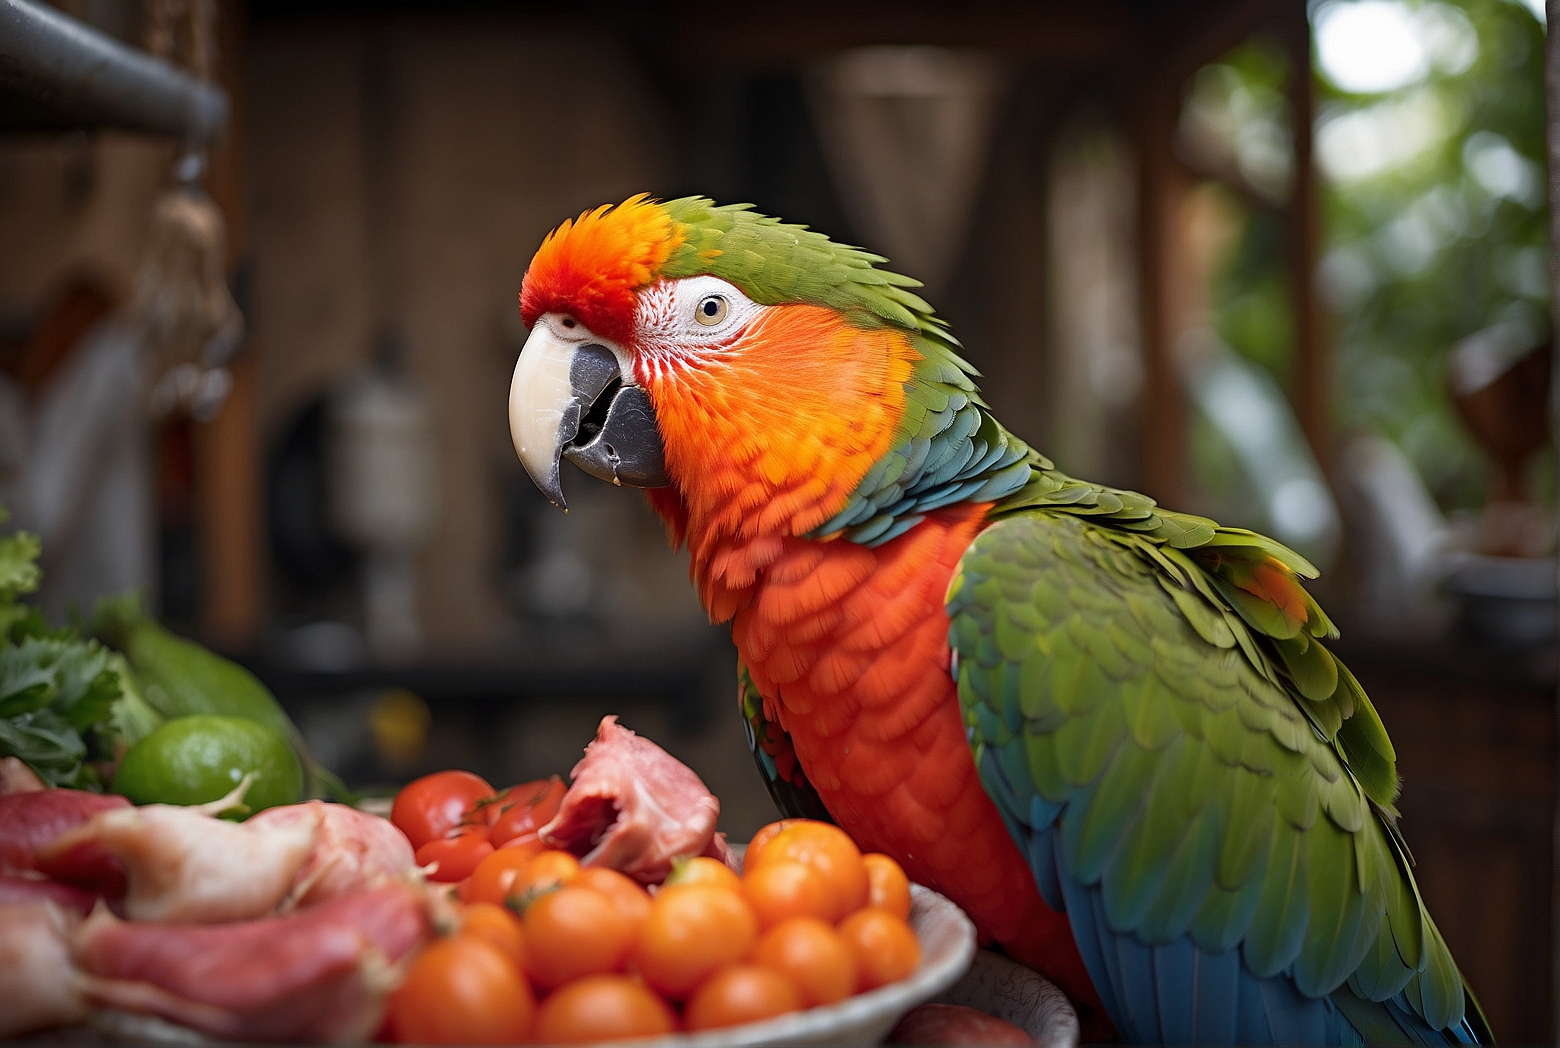 Do Parrots Eat Meat?